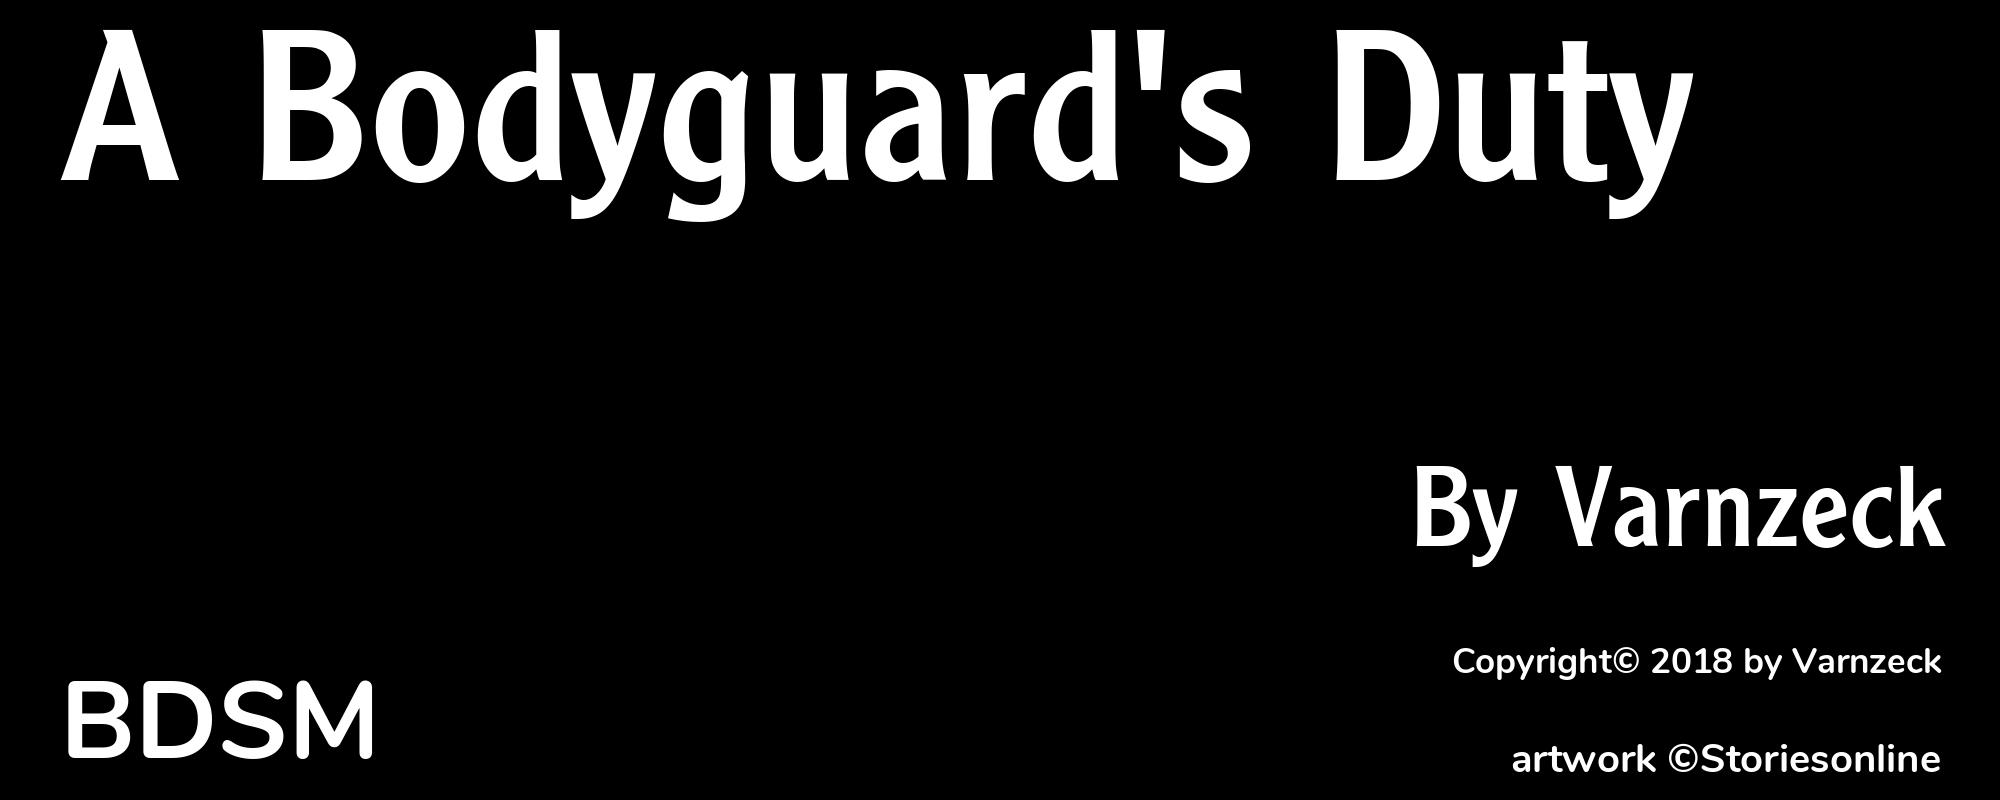 A Bodyguard's Duty - Cover